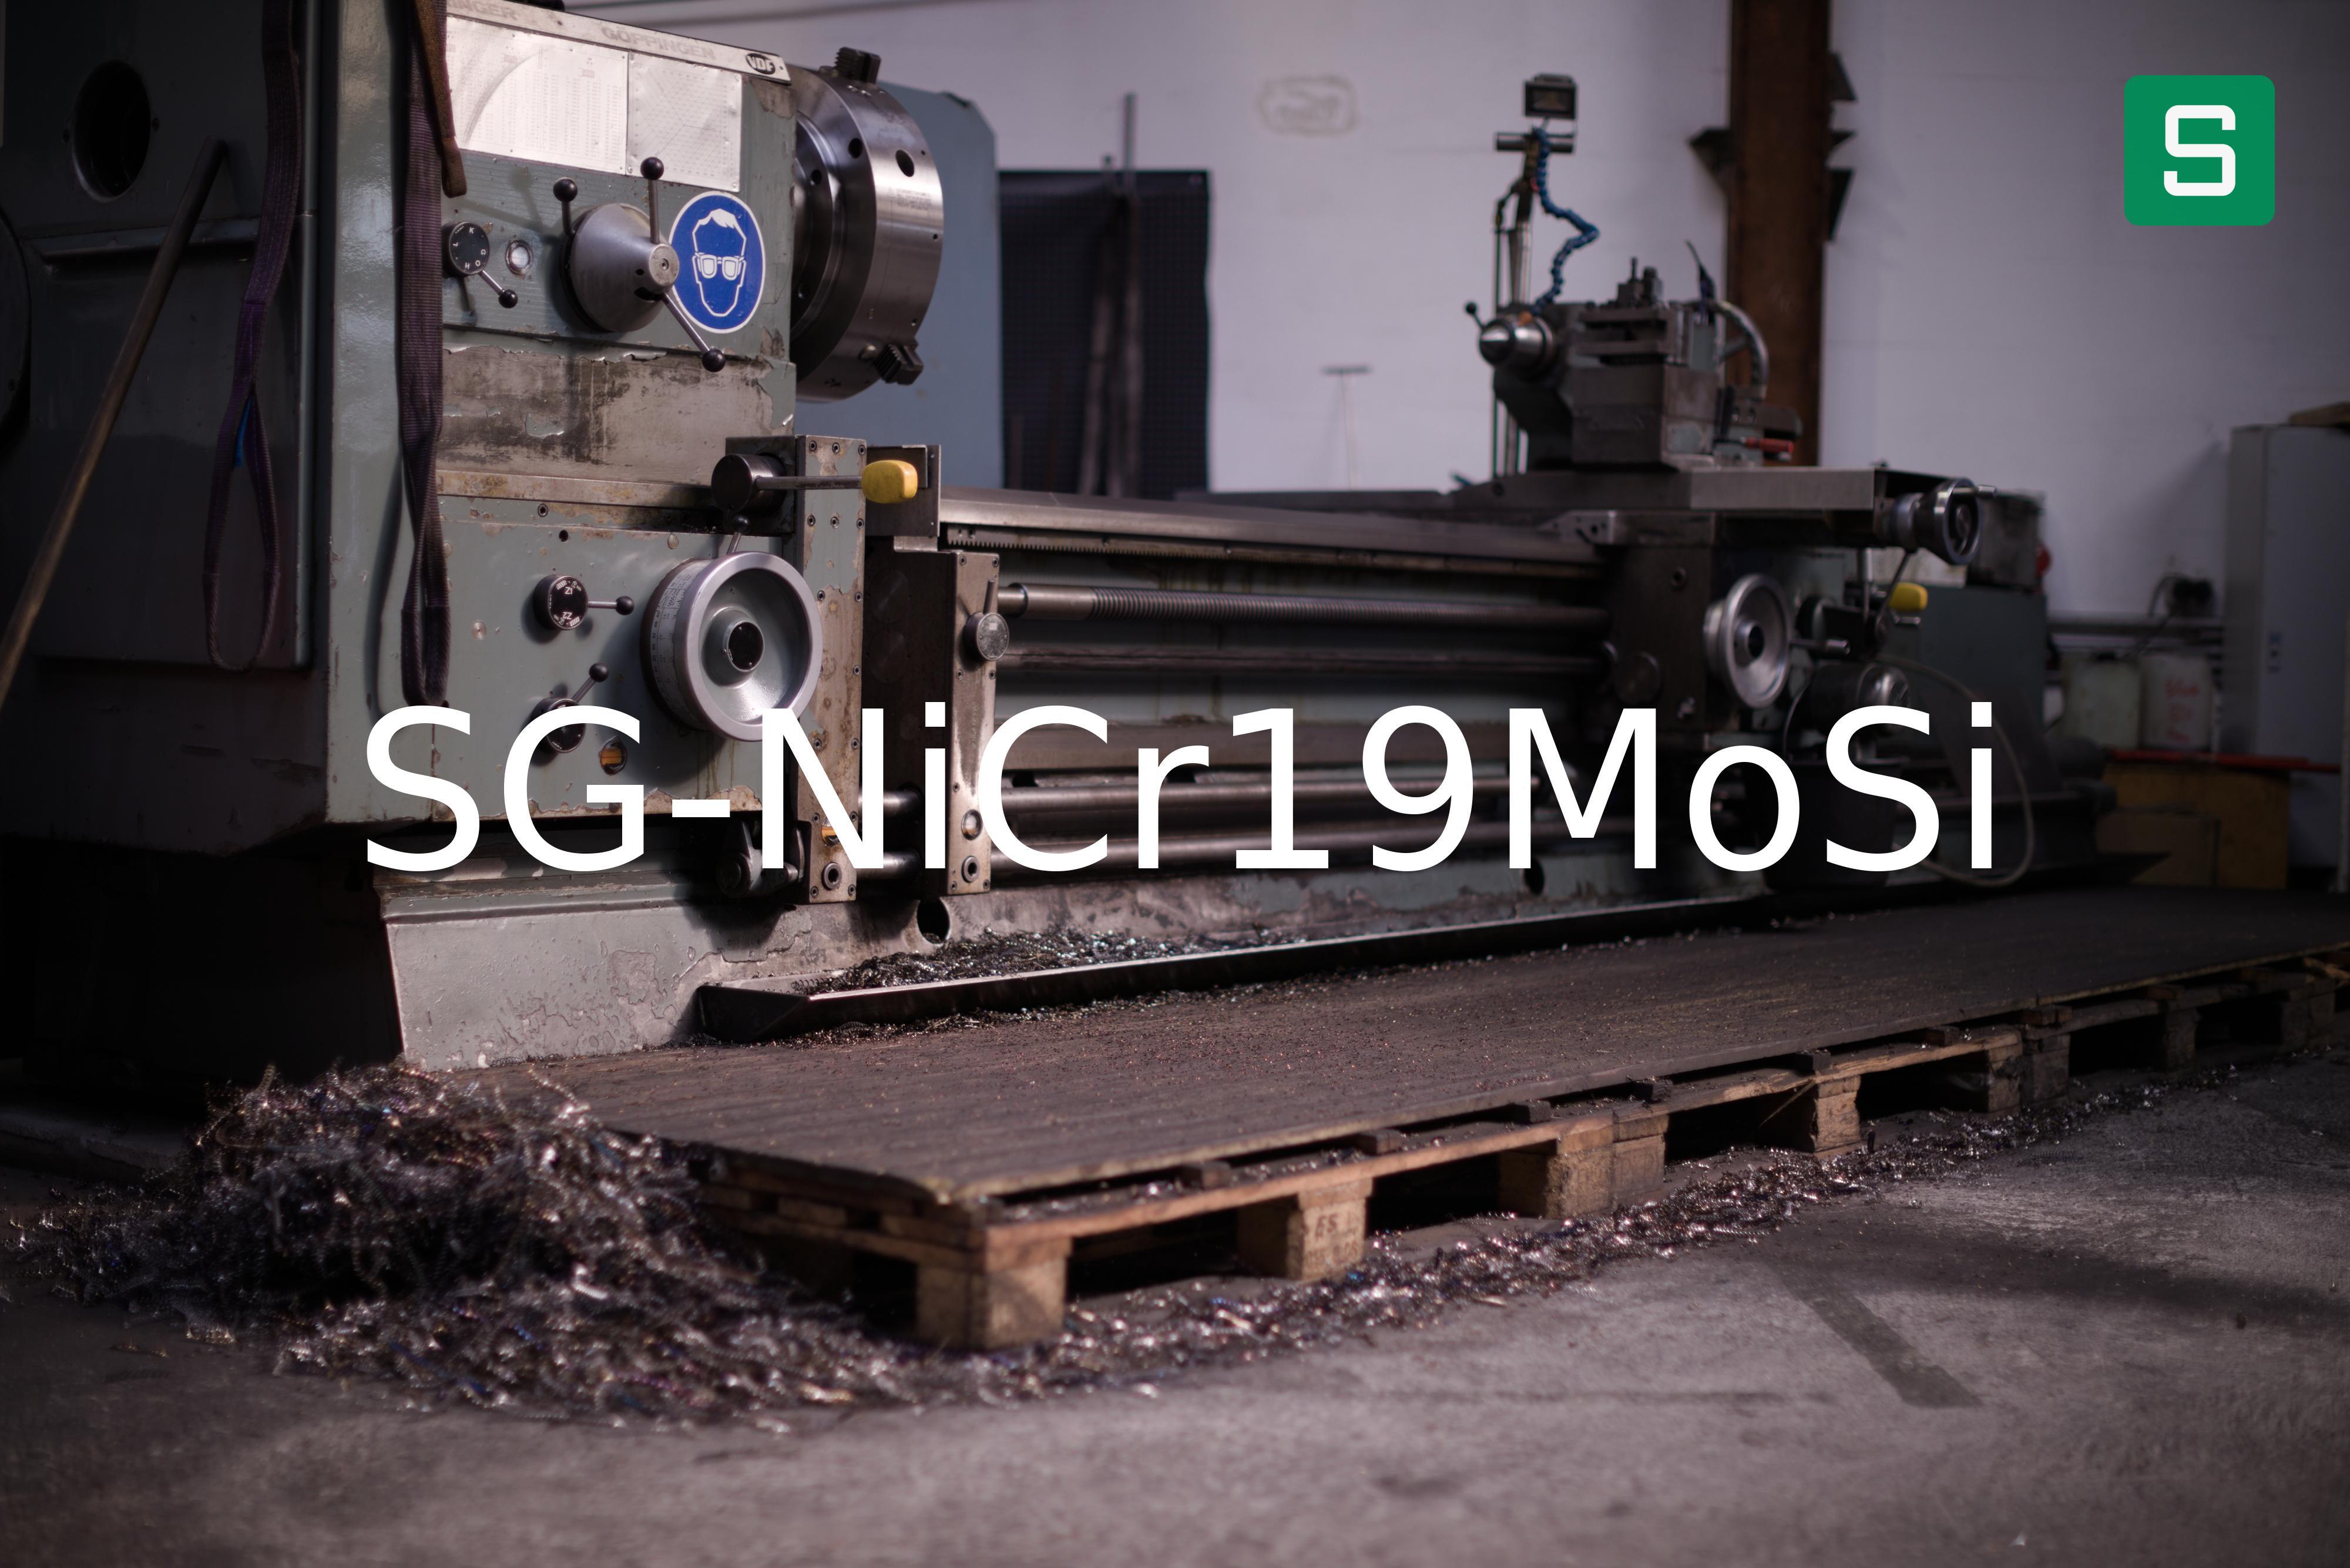 Stahlwerkstoff: SG-NiCr19MoSi